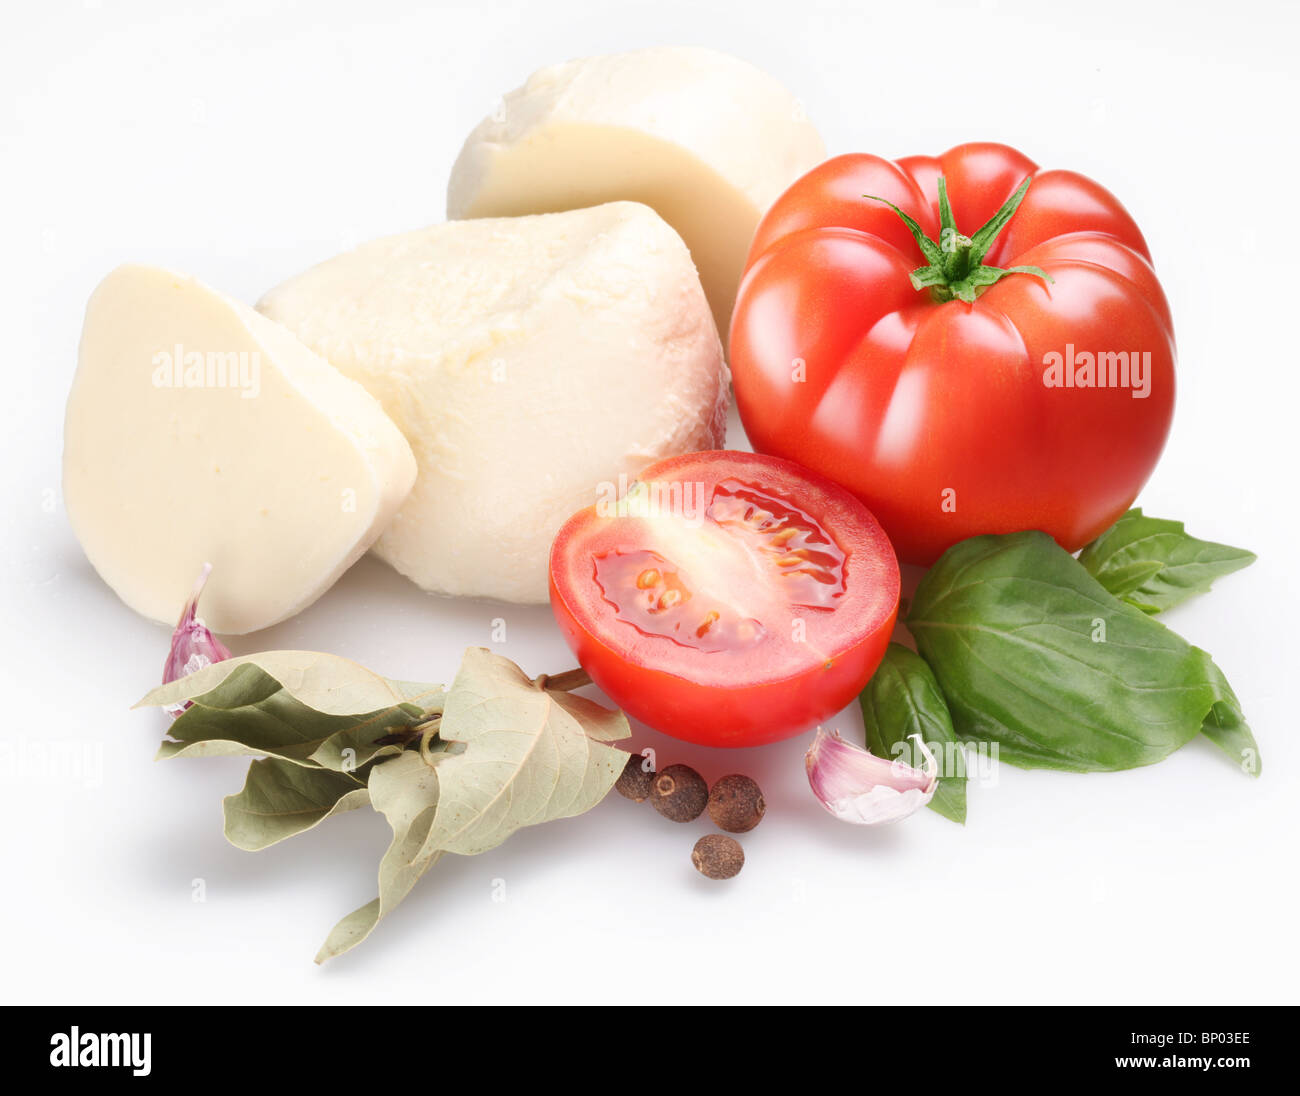 Zutaten für die Herstellung von Salat mit Mozzarella und Tomaten auf einem weißen Hintergrund. Stockfoto